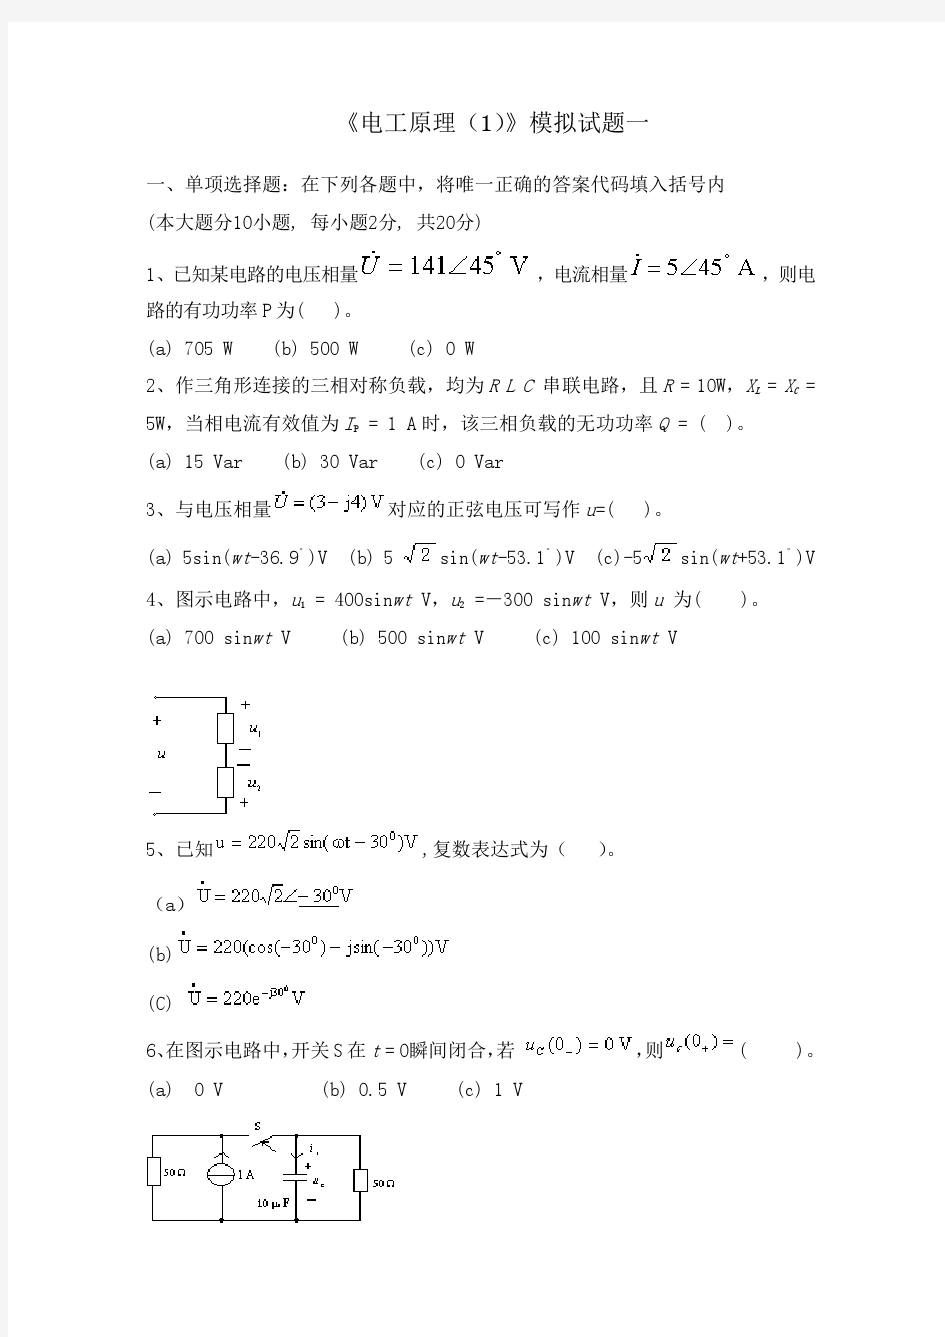 四川大学网络教育学院 电工原理(1) 模拟试题1